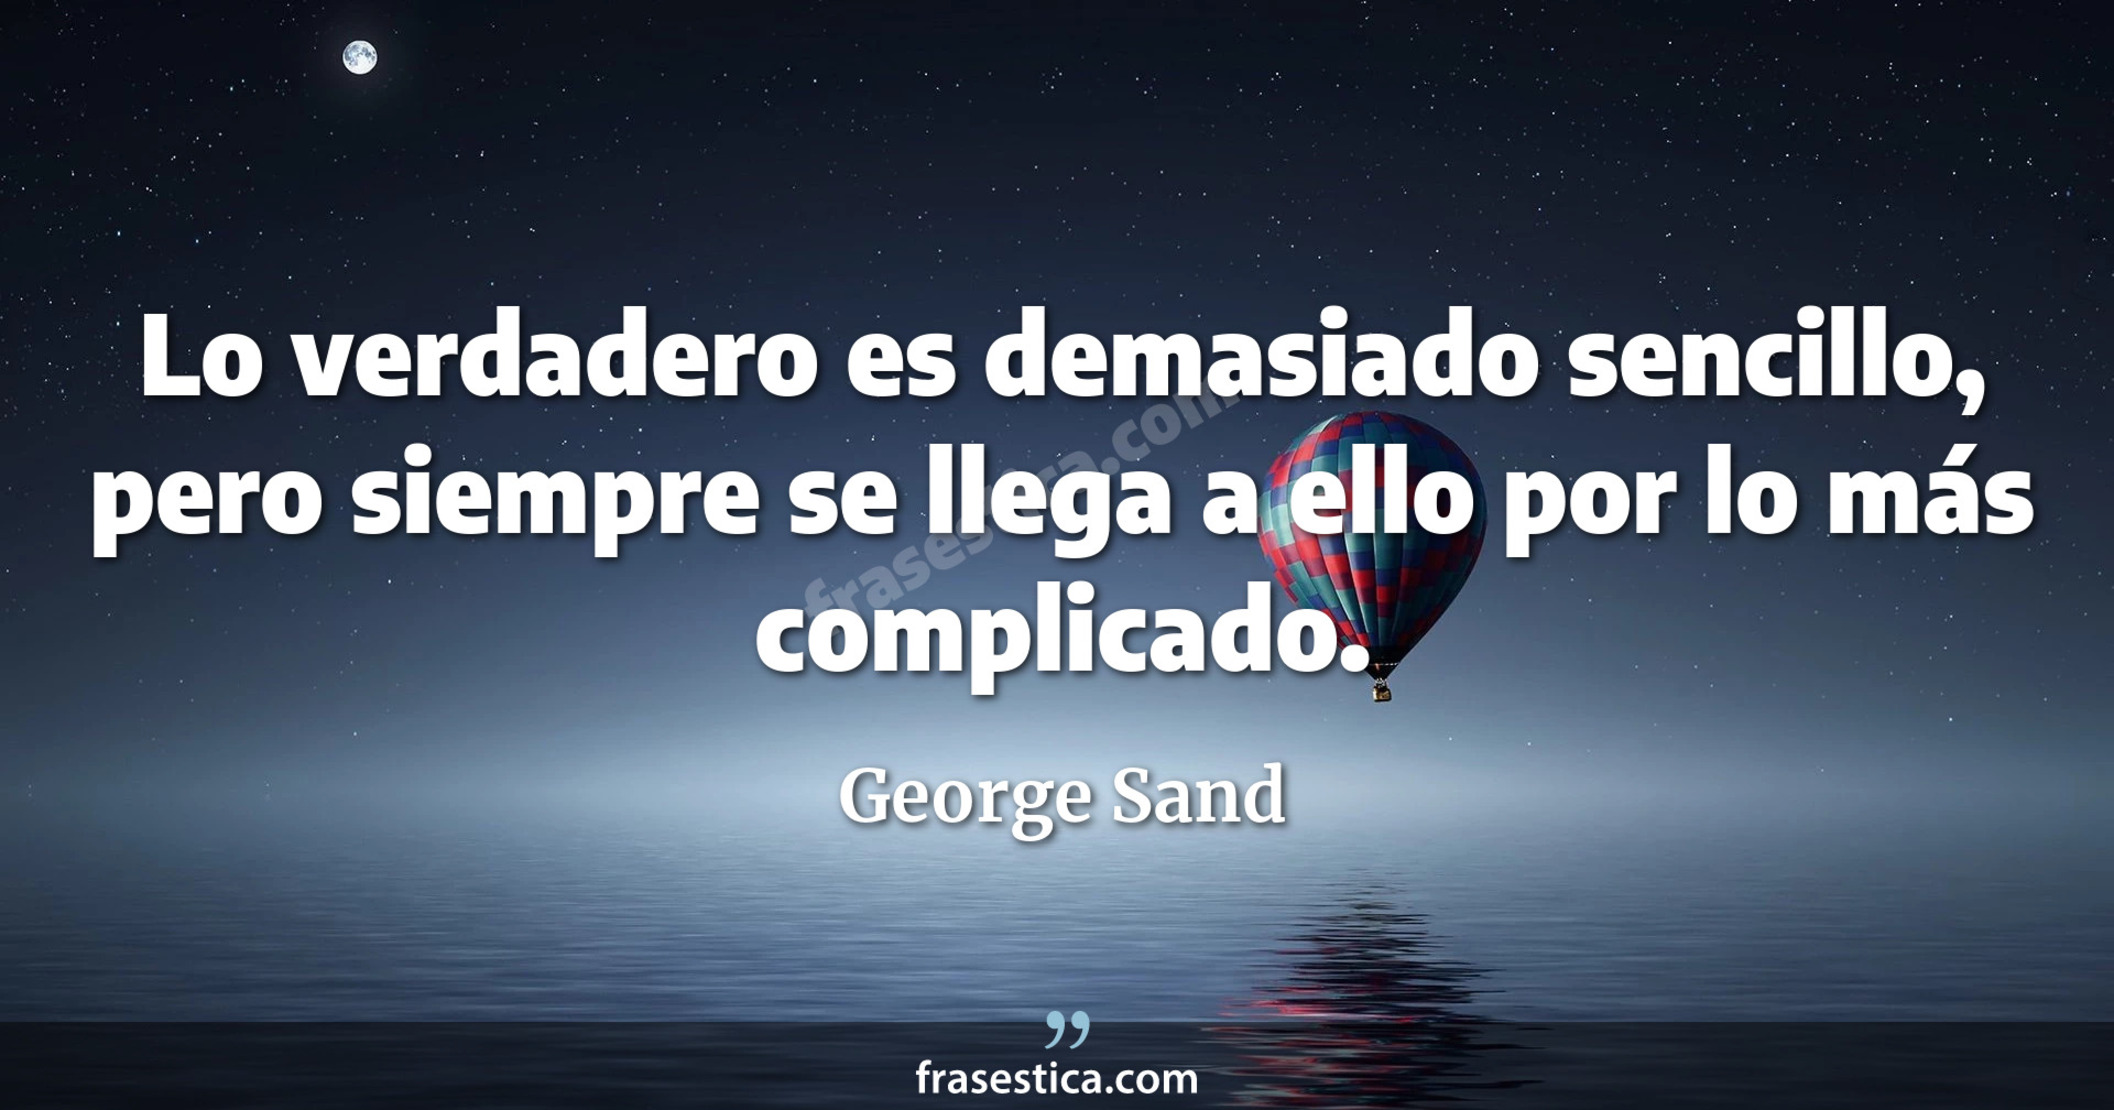 Lo verdadero es demasiado sencillo, pero siempre se llega a ello por lo más complicado. - George Sand